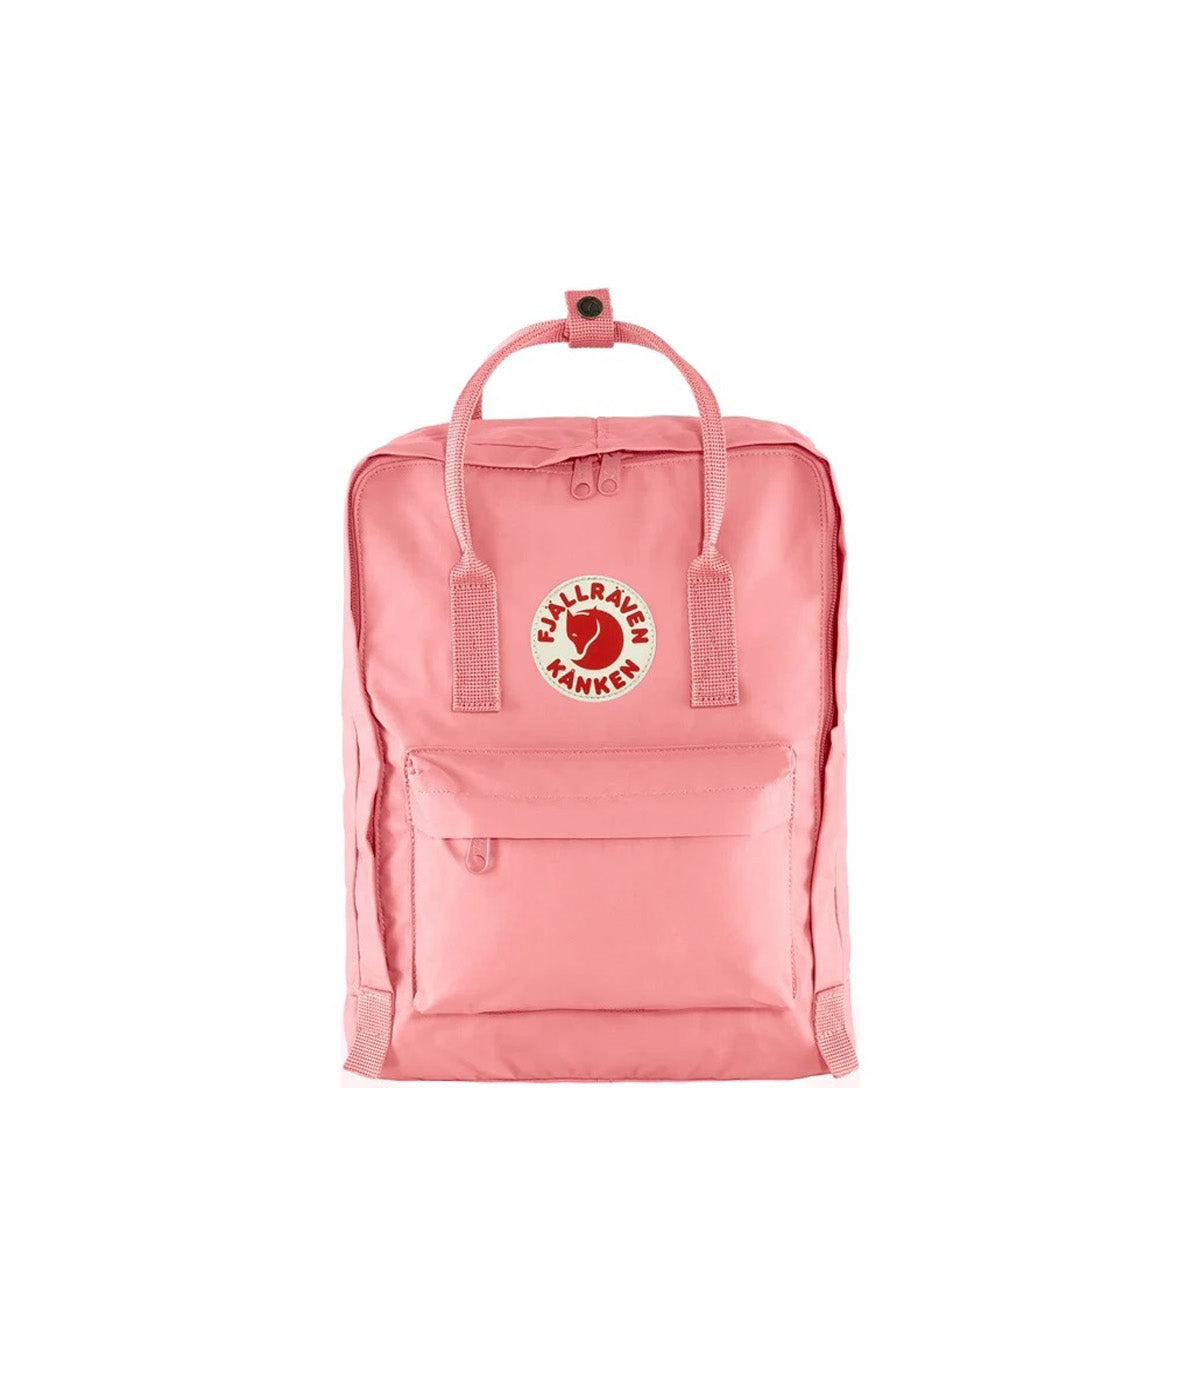 Fjallraven Kanken Original Pink Backpack